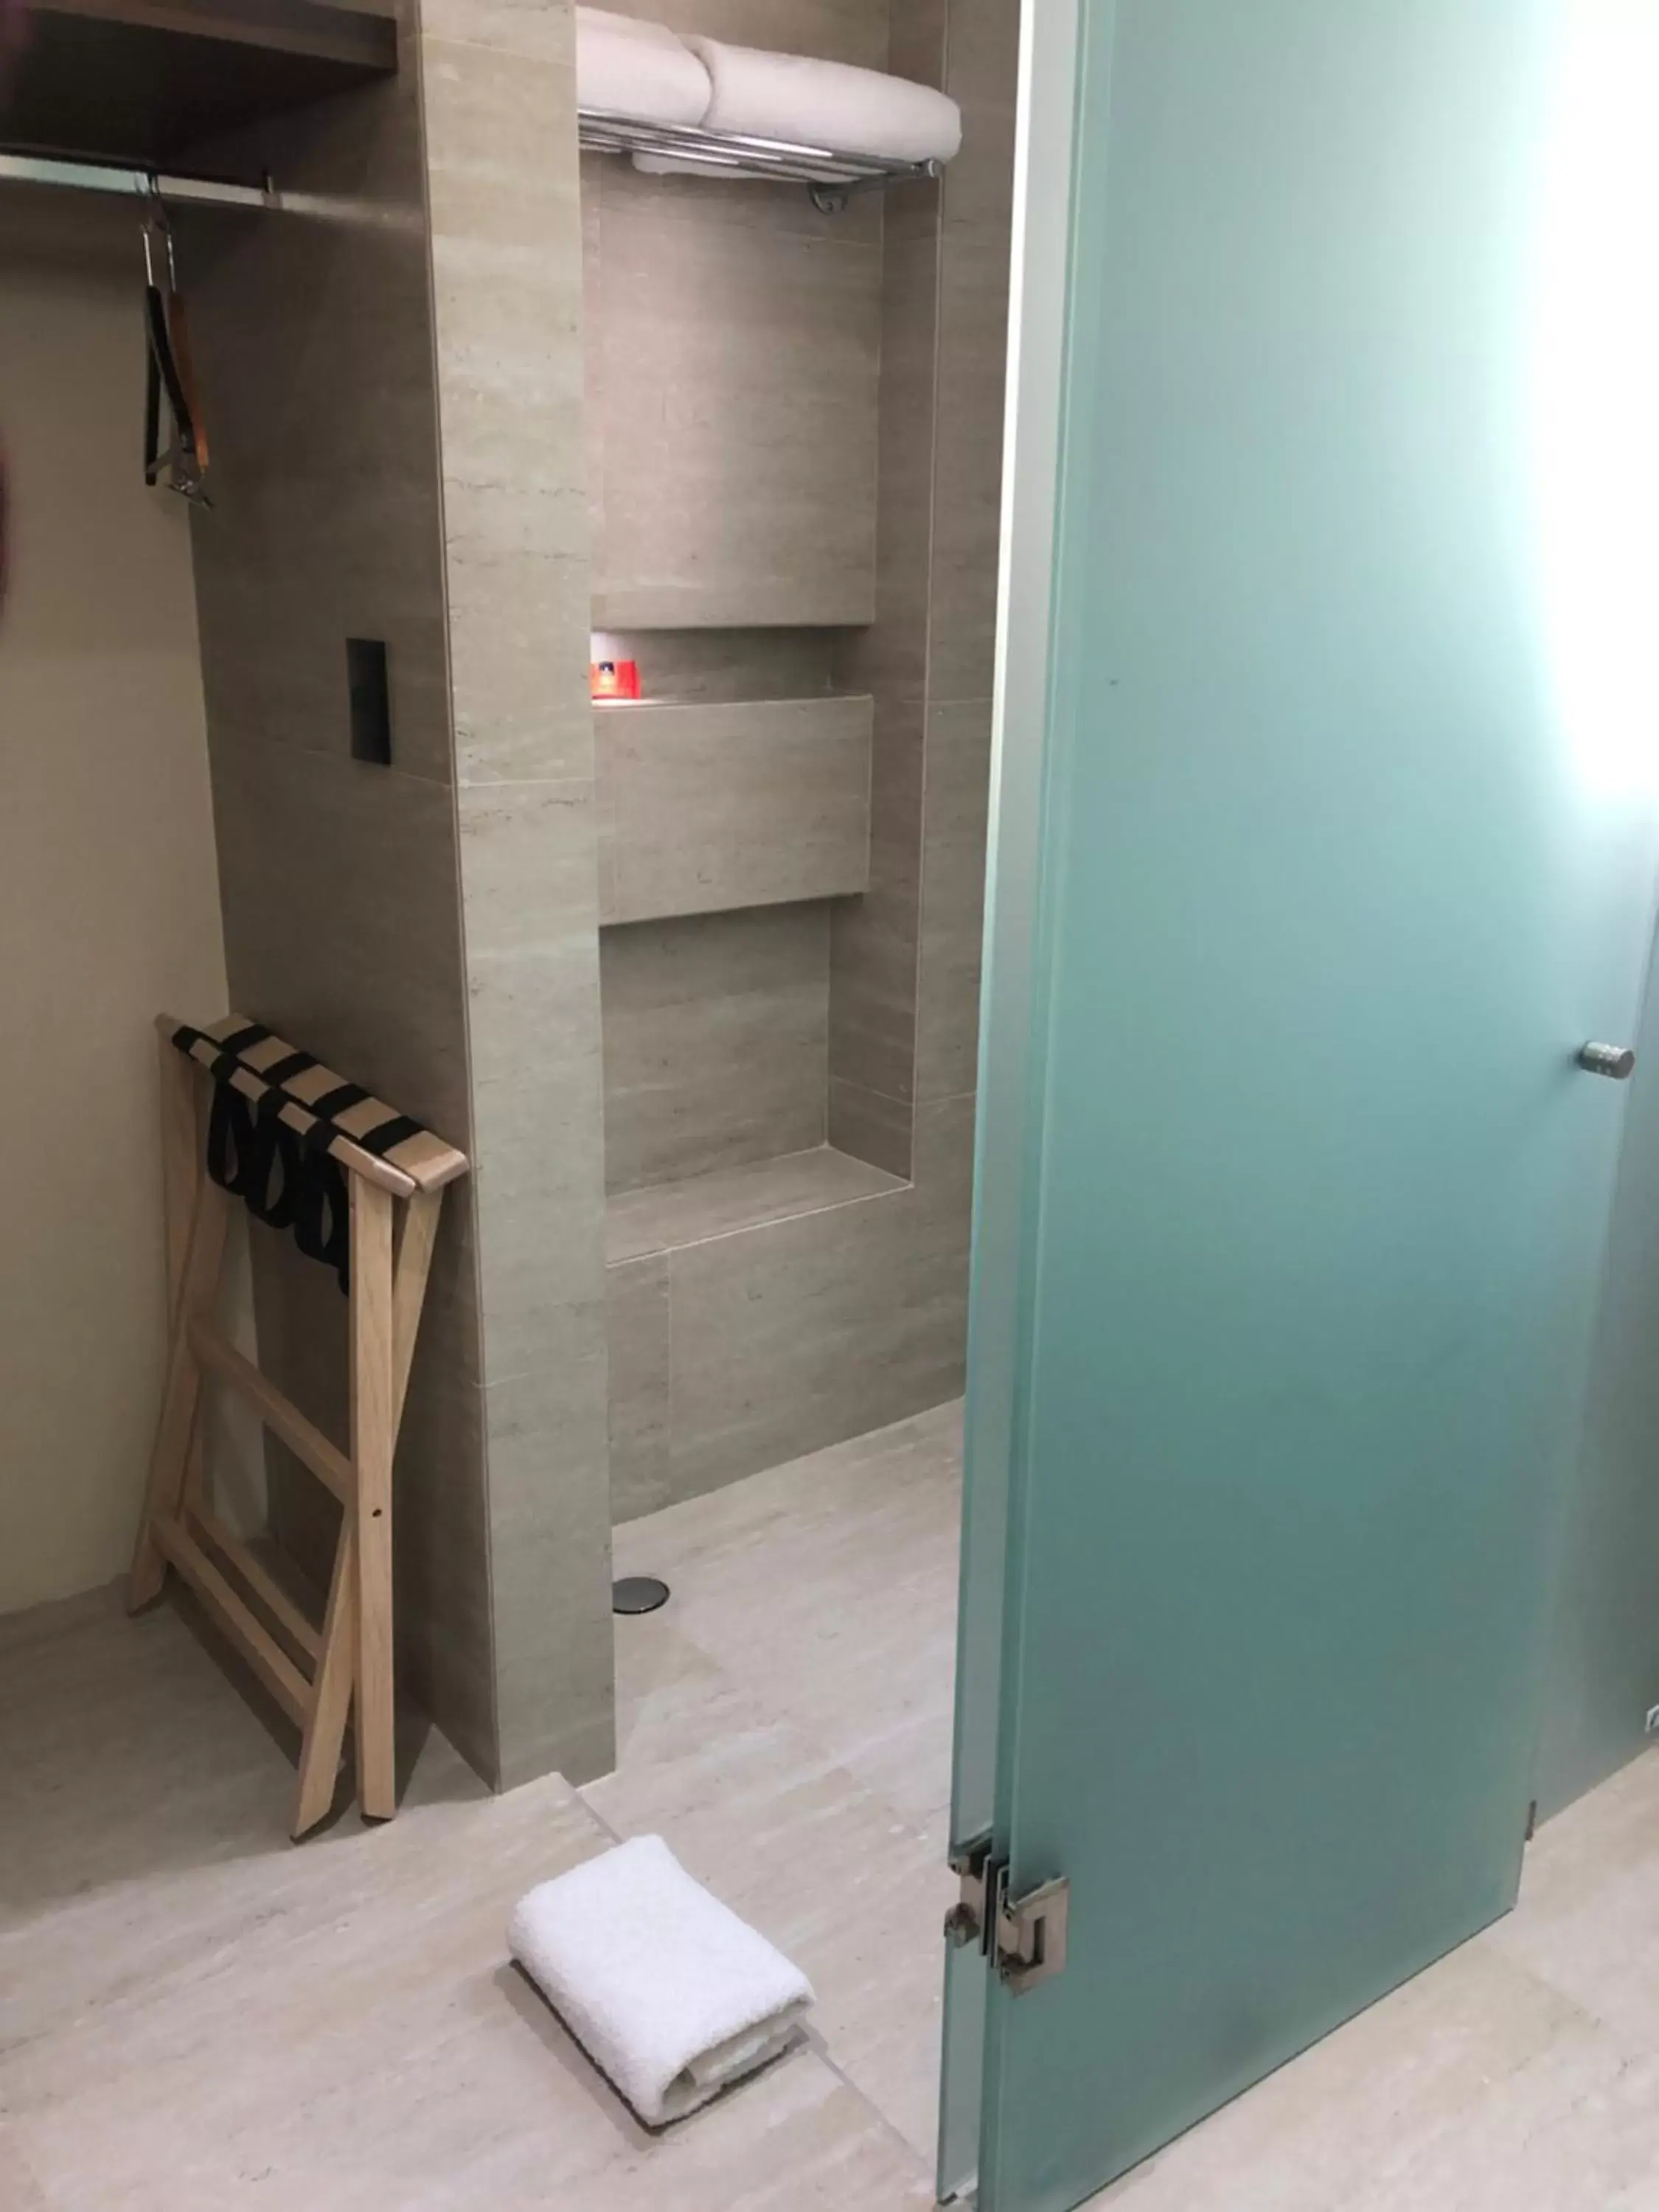 Area and facilities, Bathroom in MC Suites Mexico City